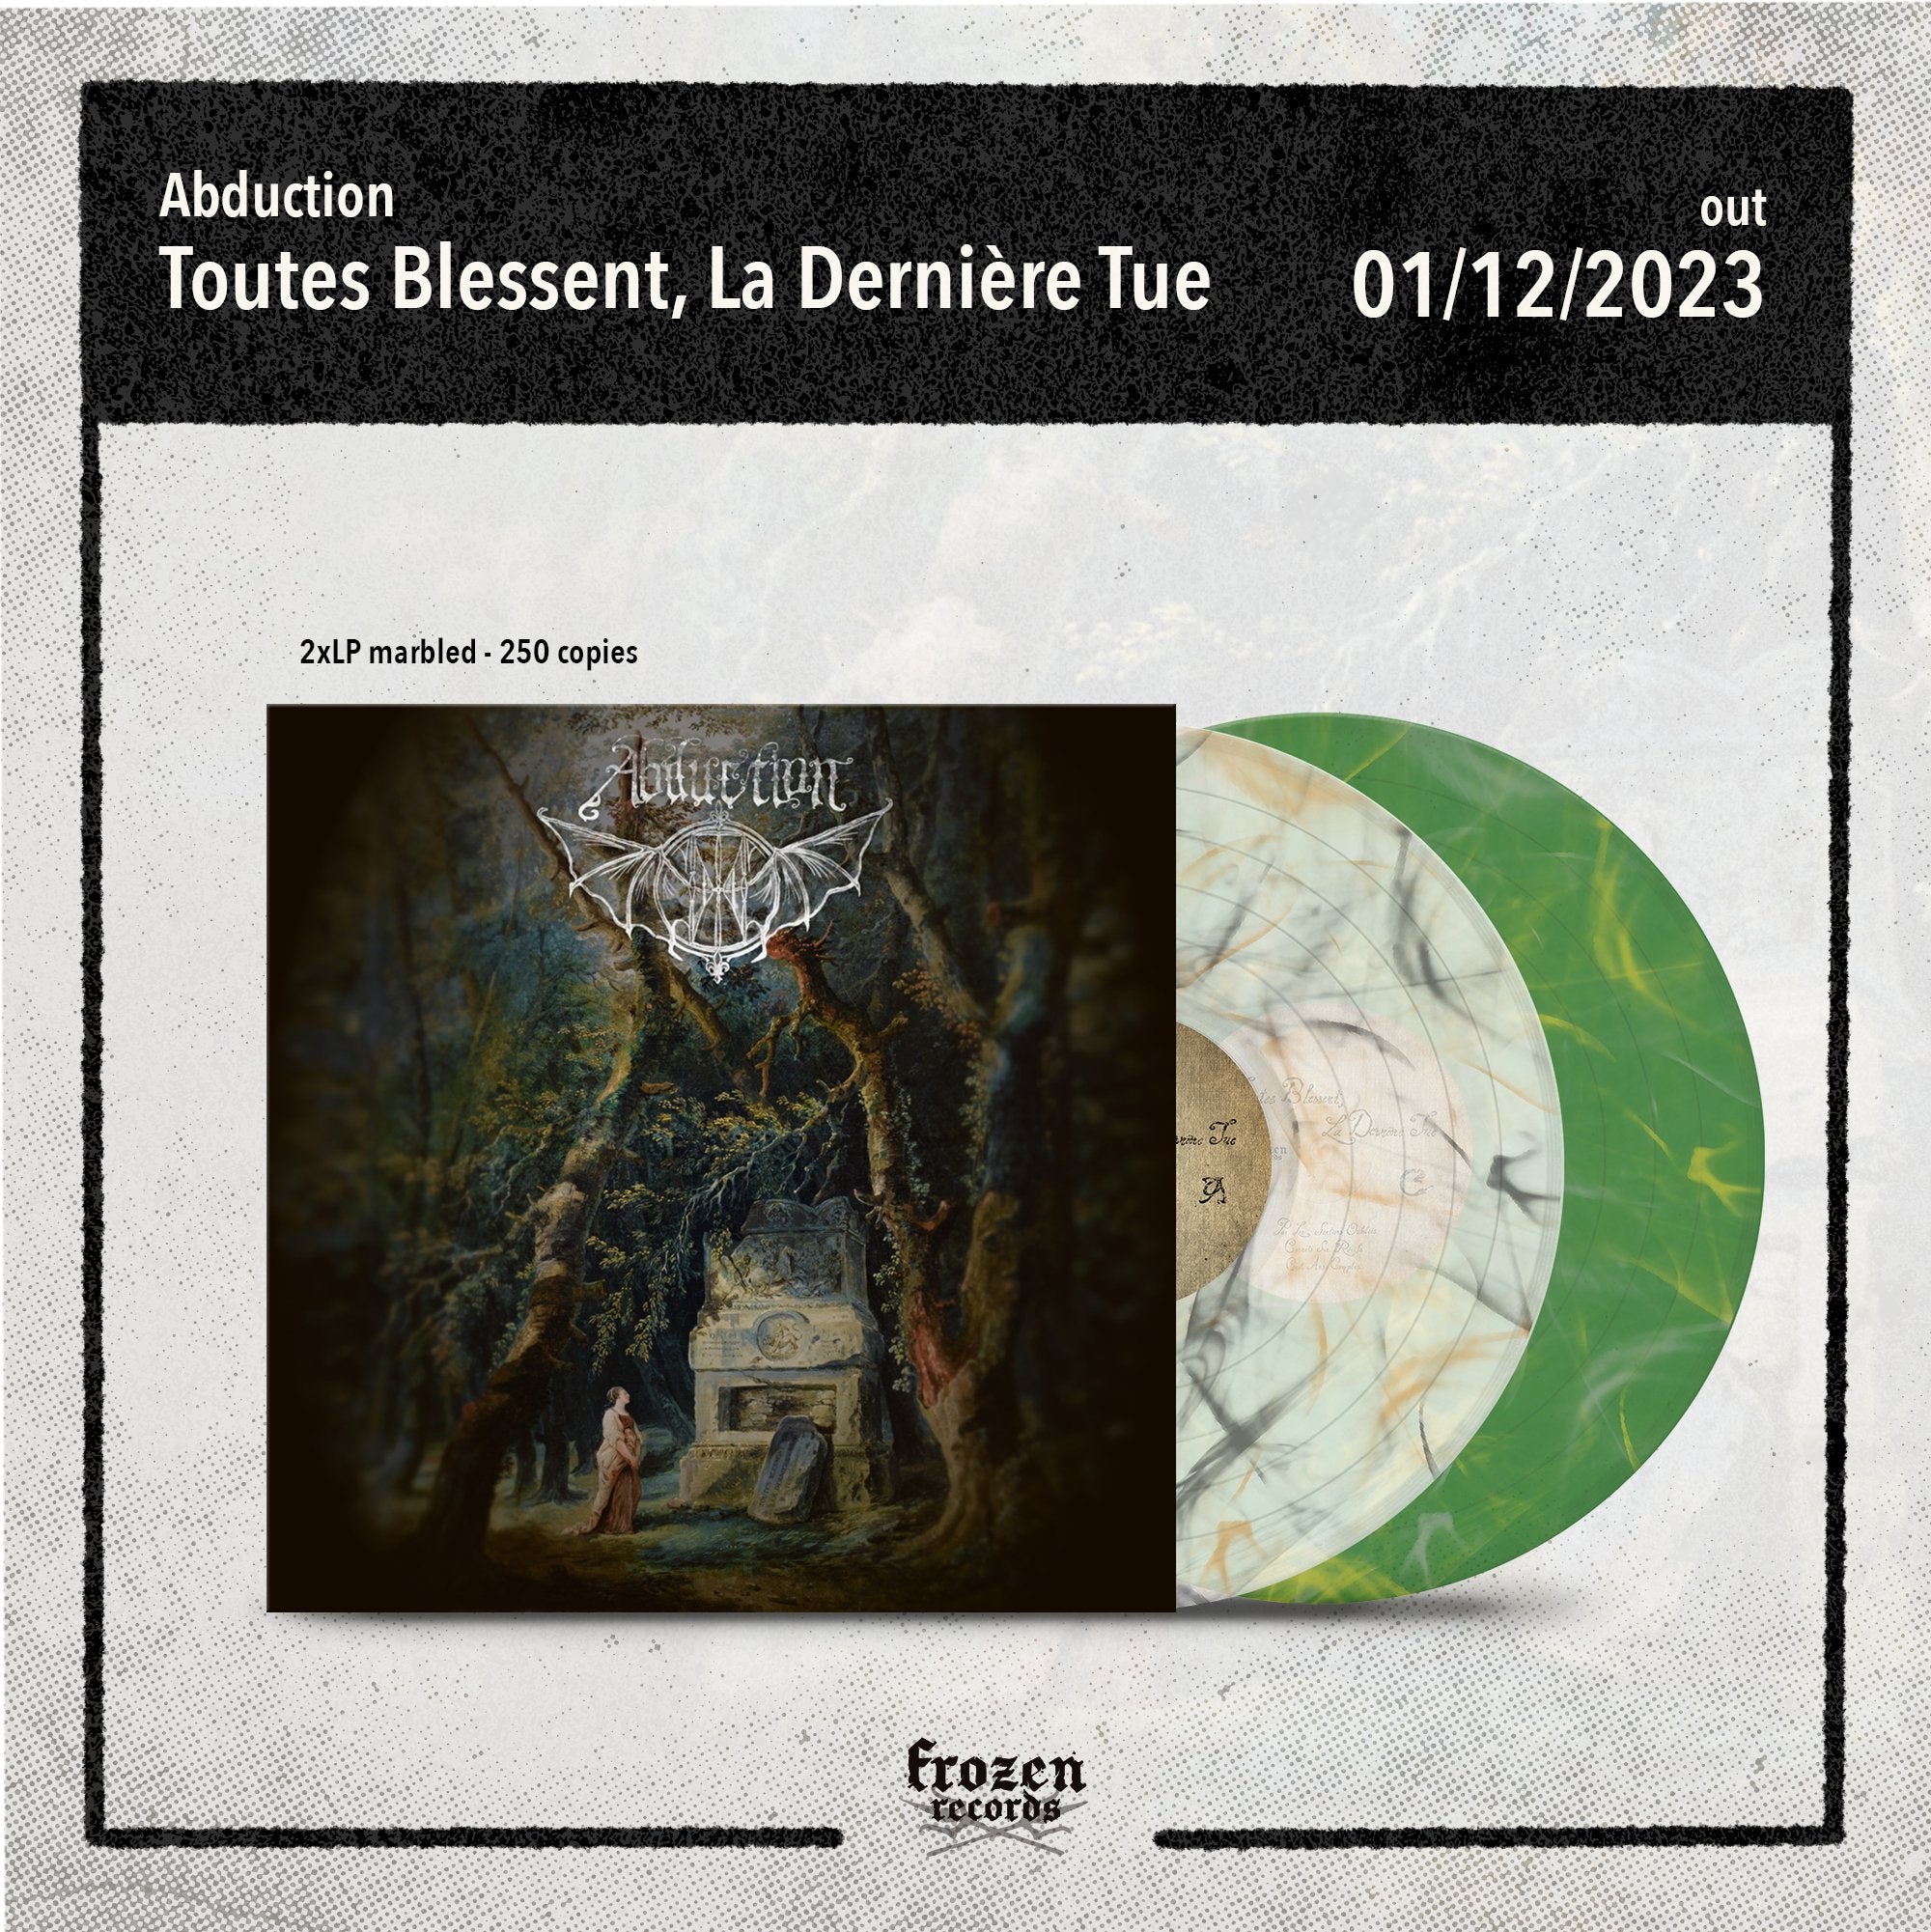 Abduction - Toutes Blessent, La Dernière Tue - Frozen Records - Vinyl